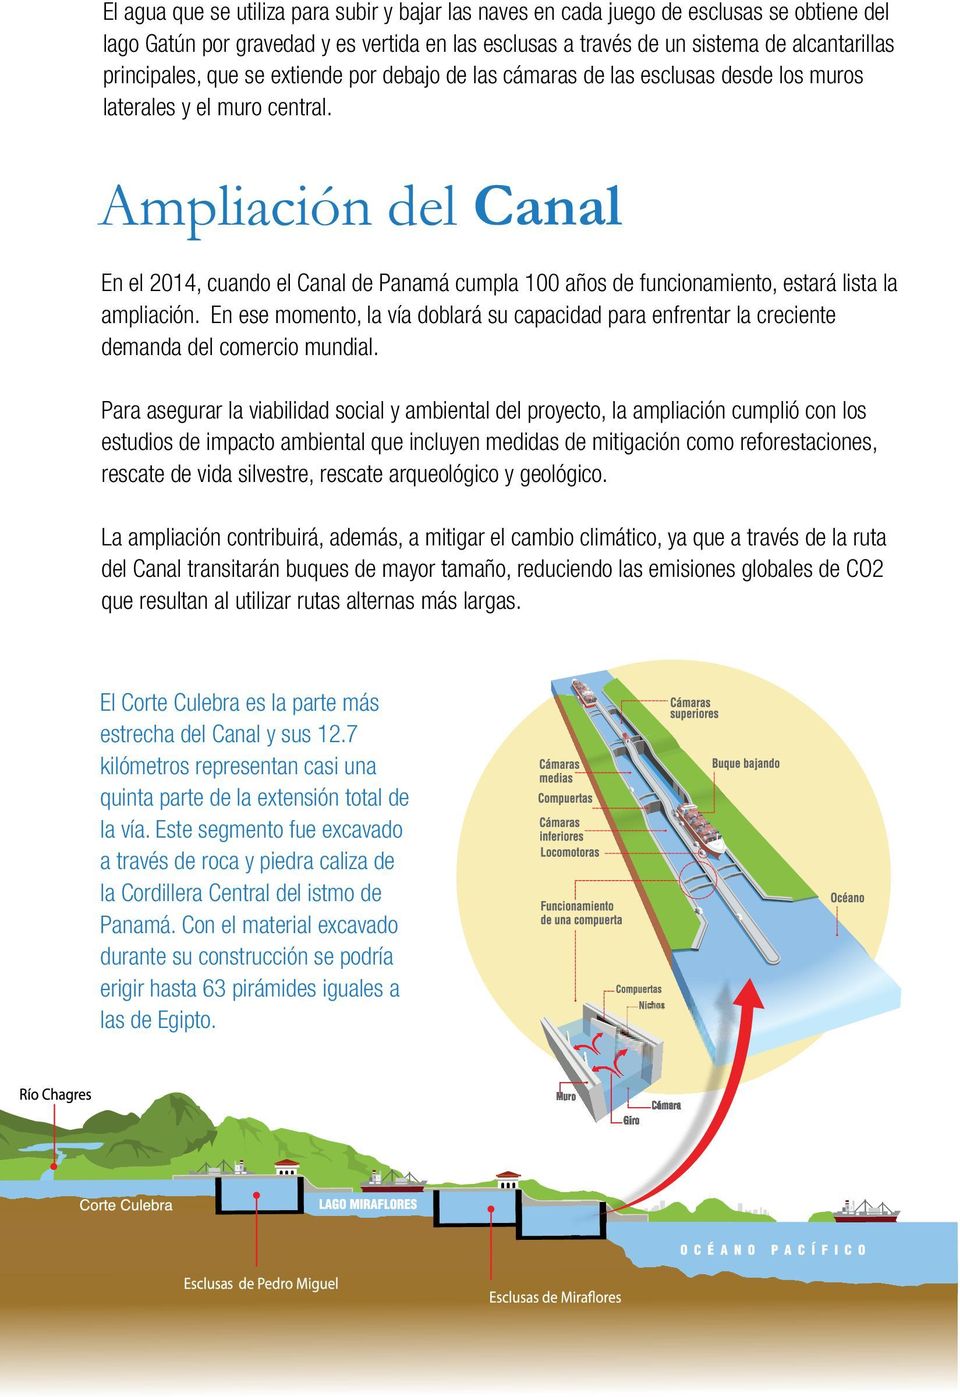 Ampliación del Canal En el 2014, cuando el Canal de Panamá cumpla 100 años de funcionamiento, estará lista la ampliación.